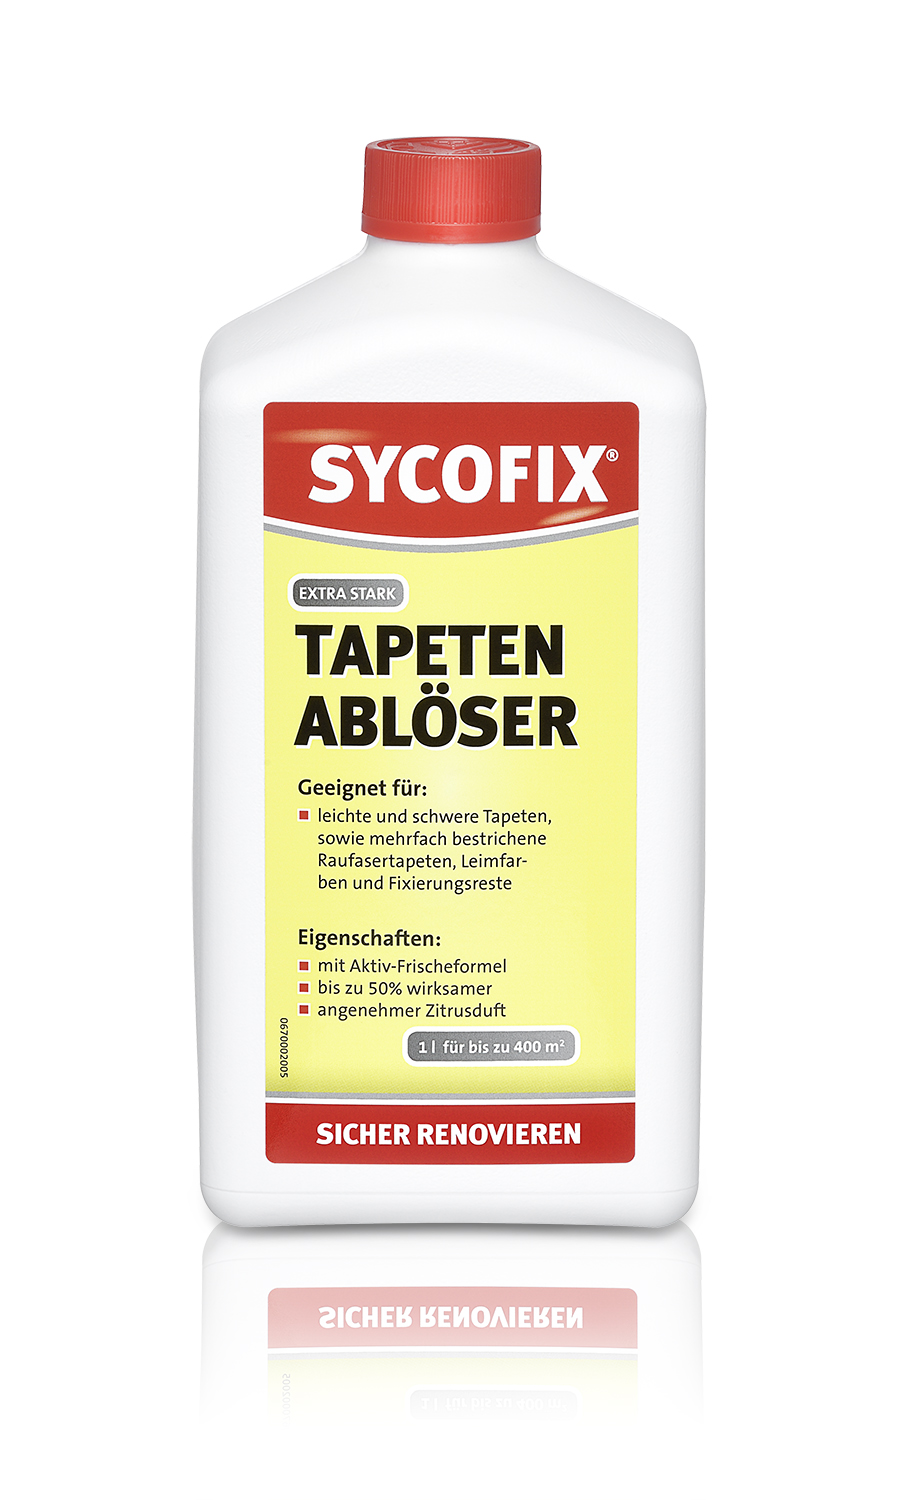 SYCOFIX ® Tapetenablöser extr a stark 1000-ml-Flasche